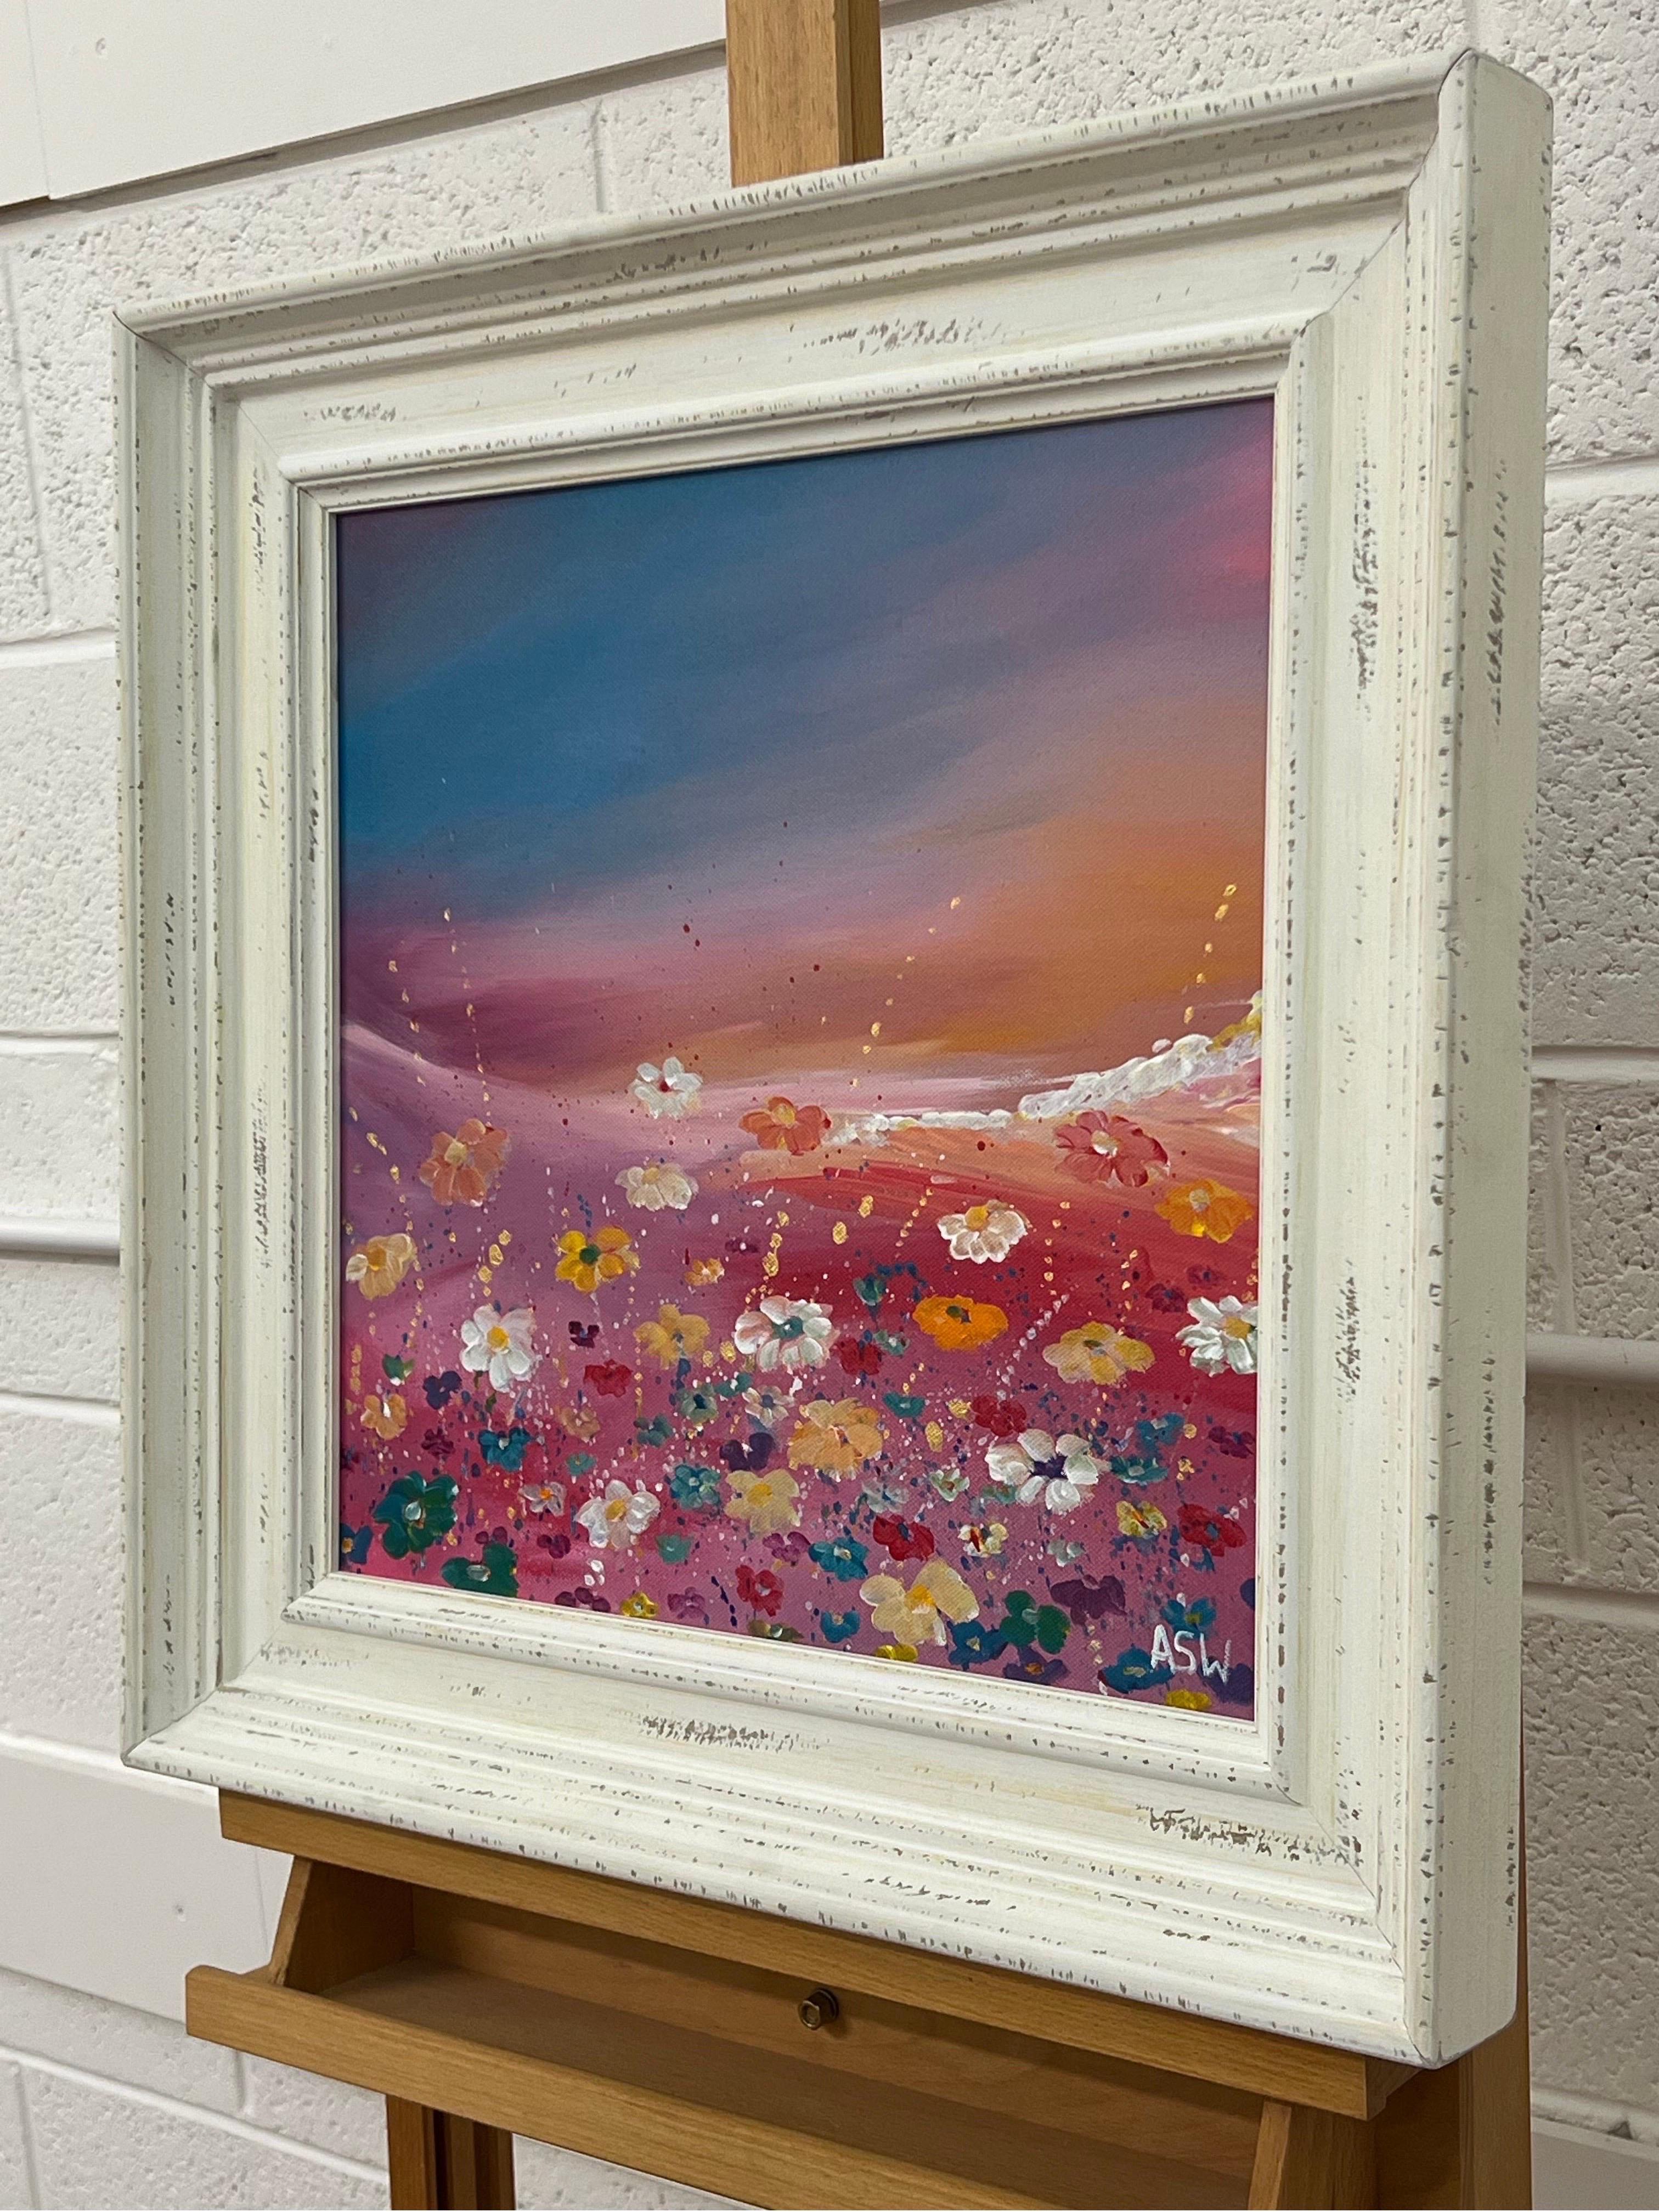 Mehrfarbige Wildblumen auf türkisem und rosa Hintergrund von der zeitgenössischen Künstlerin Angela Wakefield. Dies ist eine verträumte Landschaft mit abstrakten Blumen auf einer Wiese an einem Hang. 

Kunst misst 16 x 16 Zoll
Rahmen misst 22 x 22